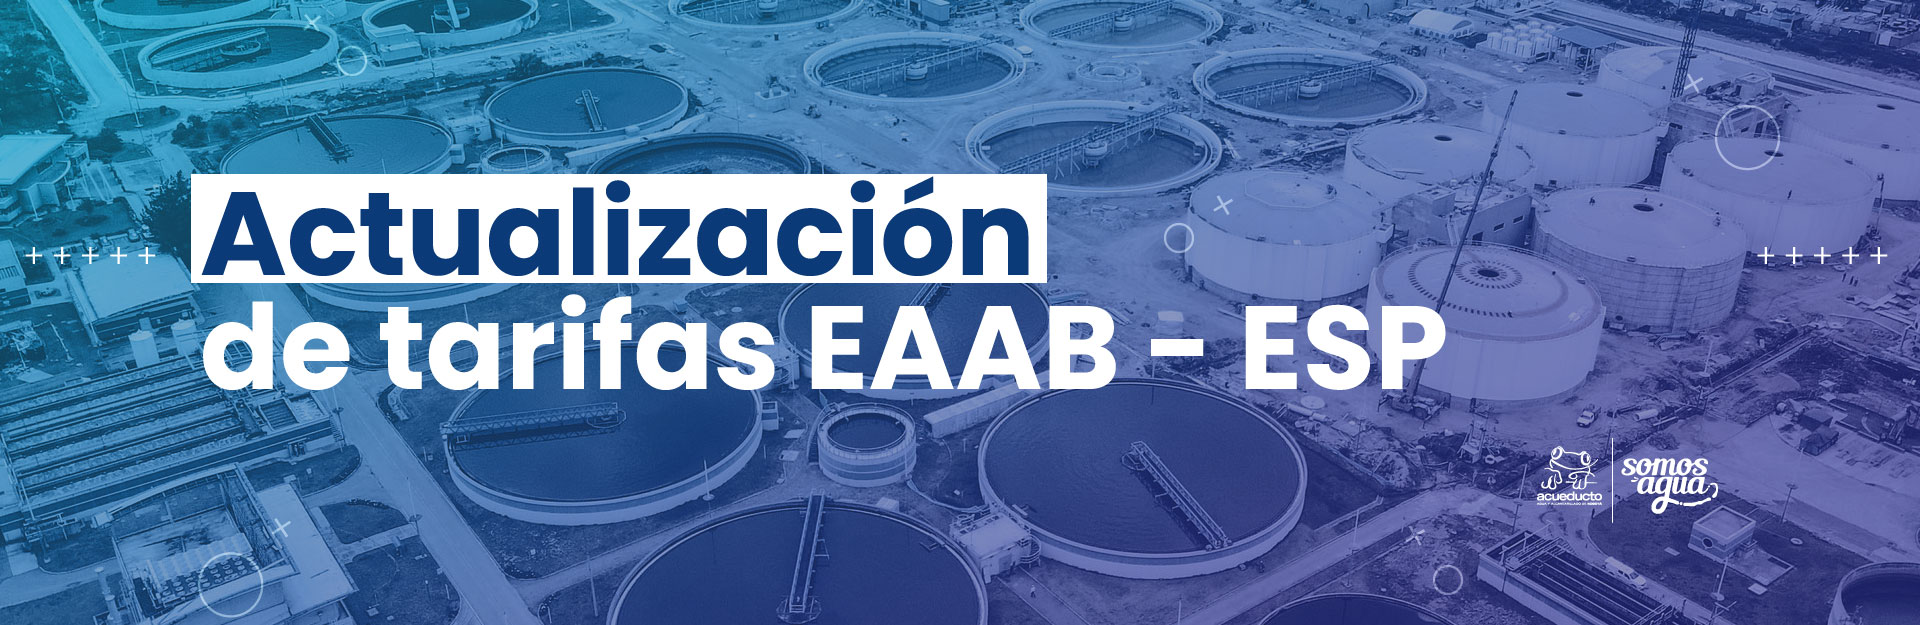 Actualización de tarifas EAAB - ESP